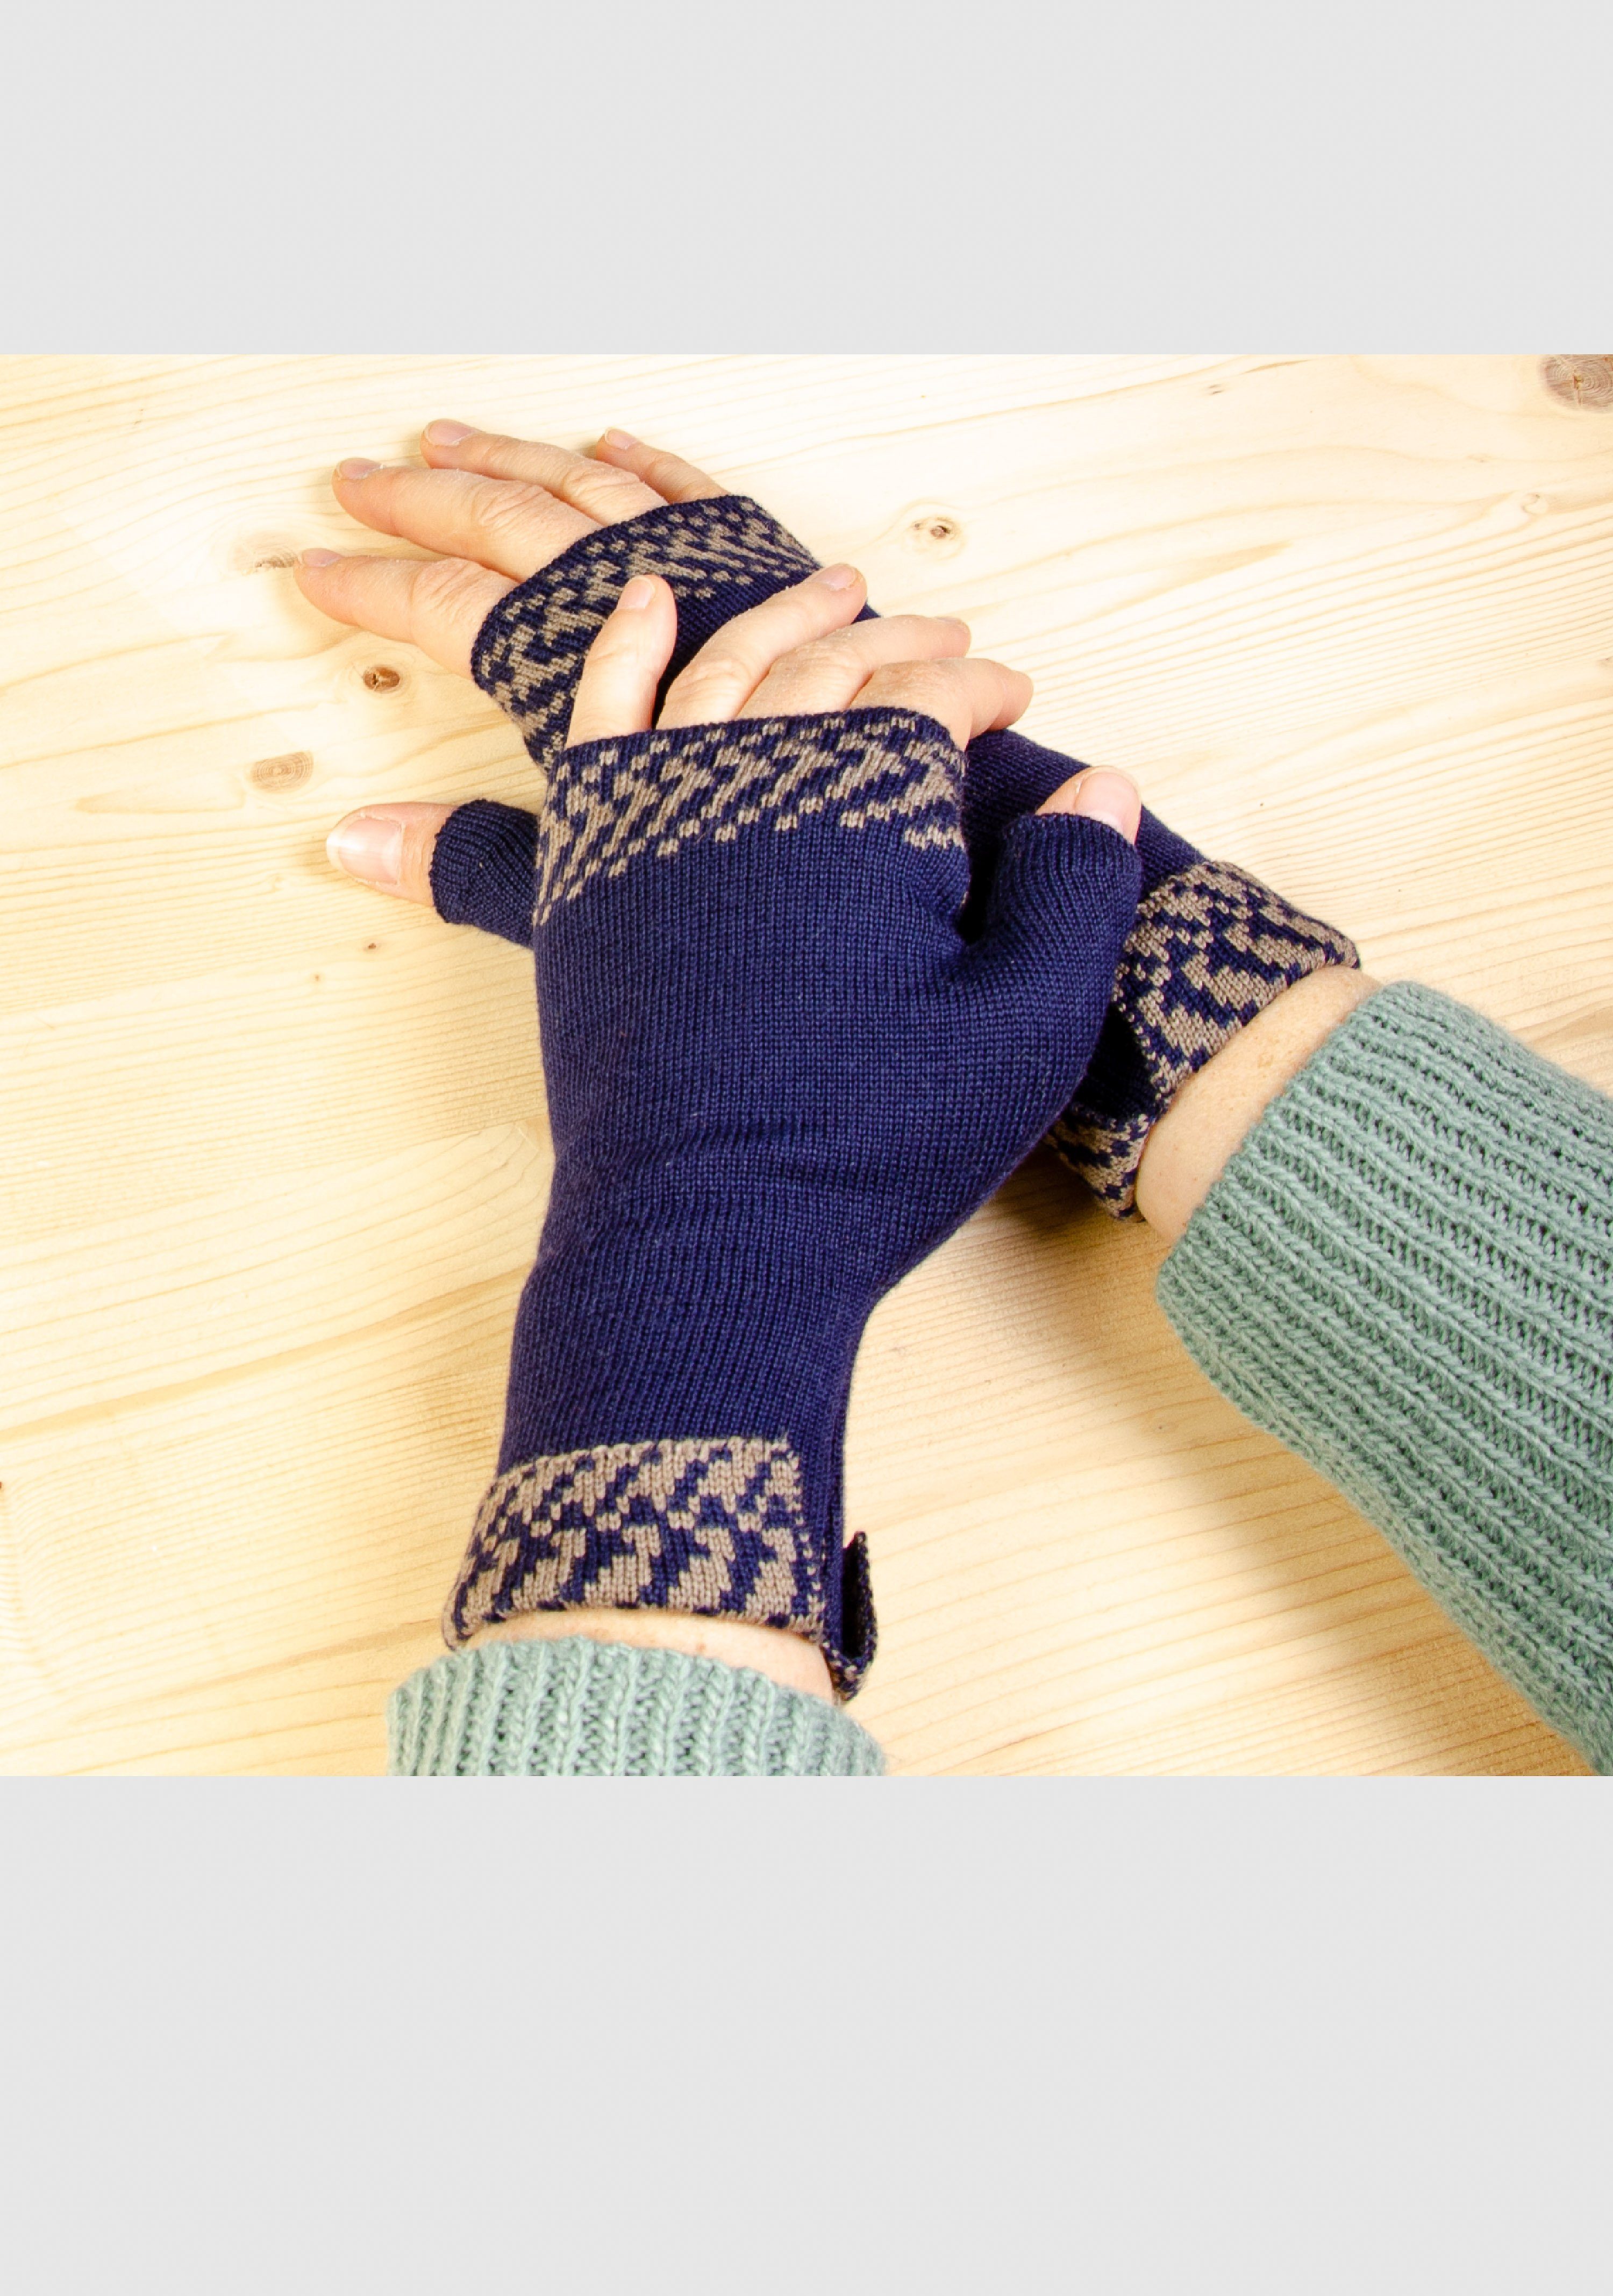 LANARTO slow fashion Strickhandschuhe Merino Handwärmer Pixel in vielen Farben aus 100% Merino extrasoft nacht_taupe | Strickhandschuhe